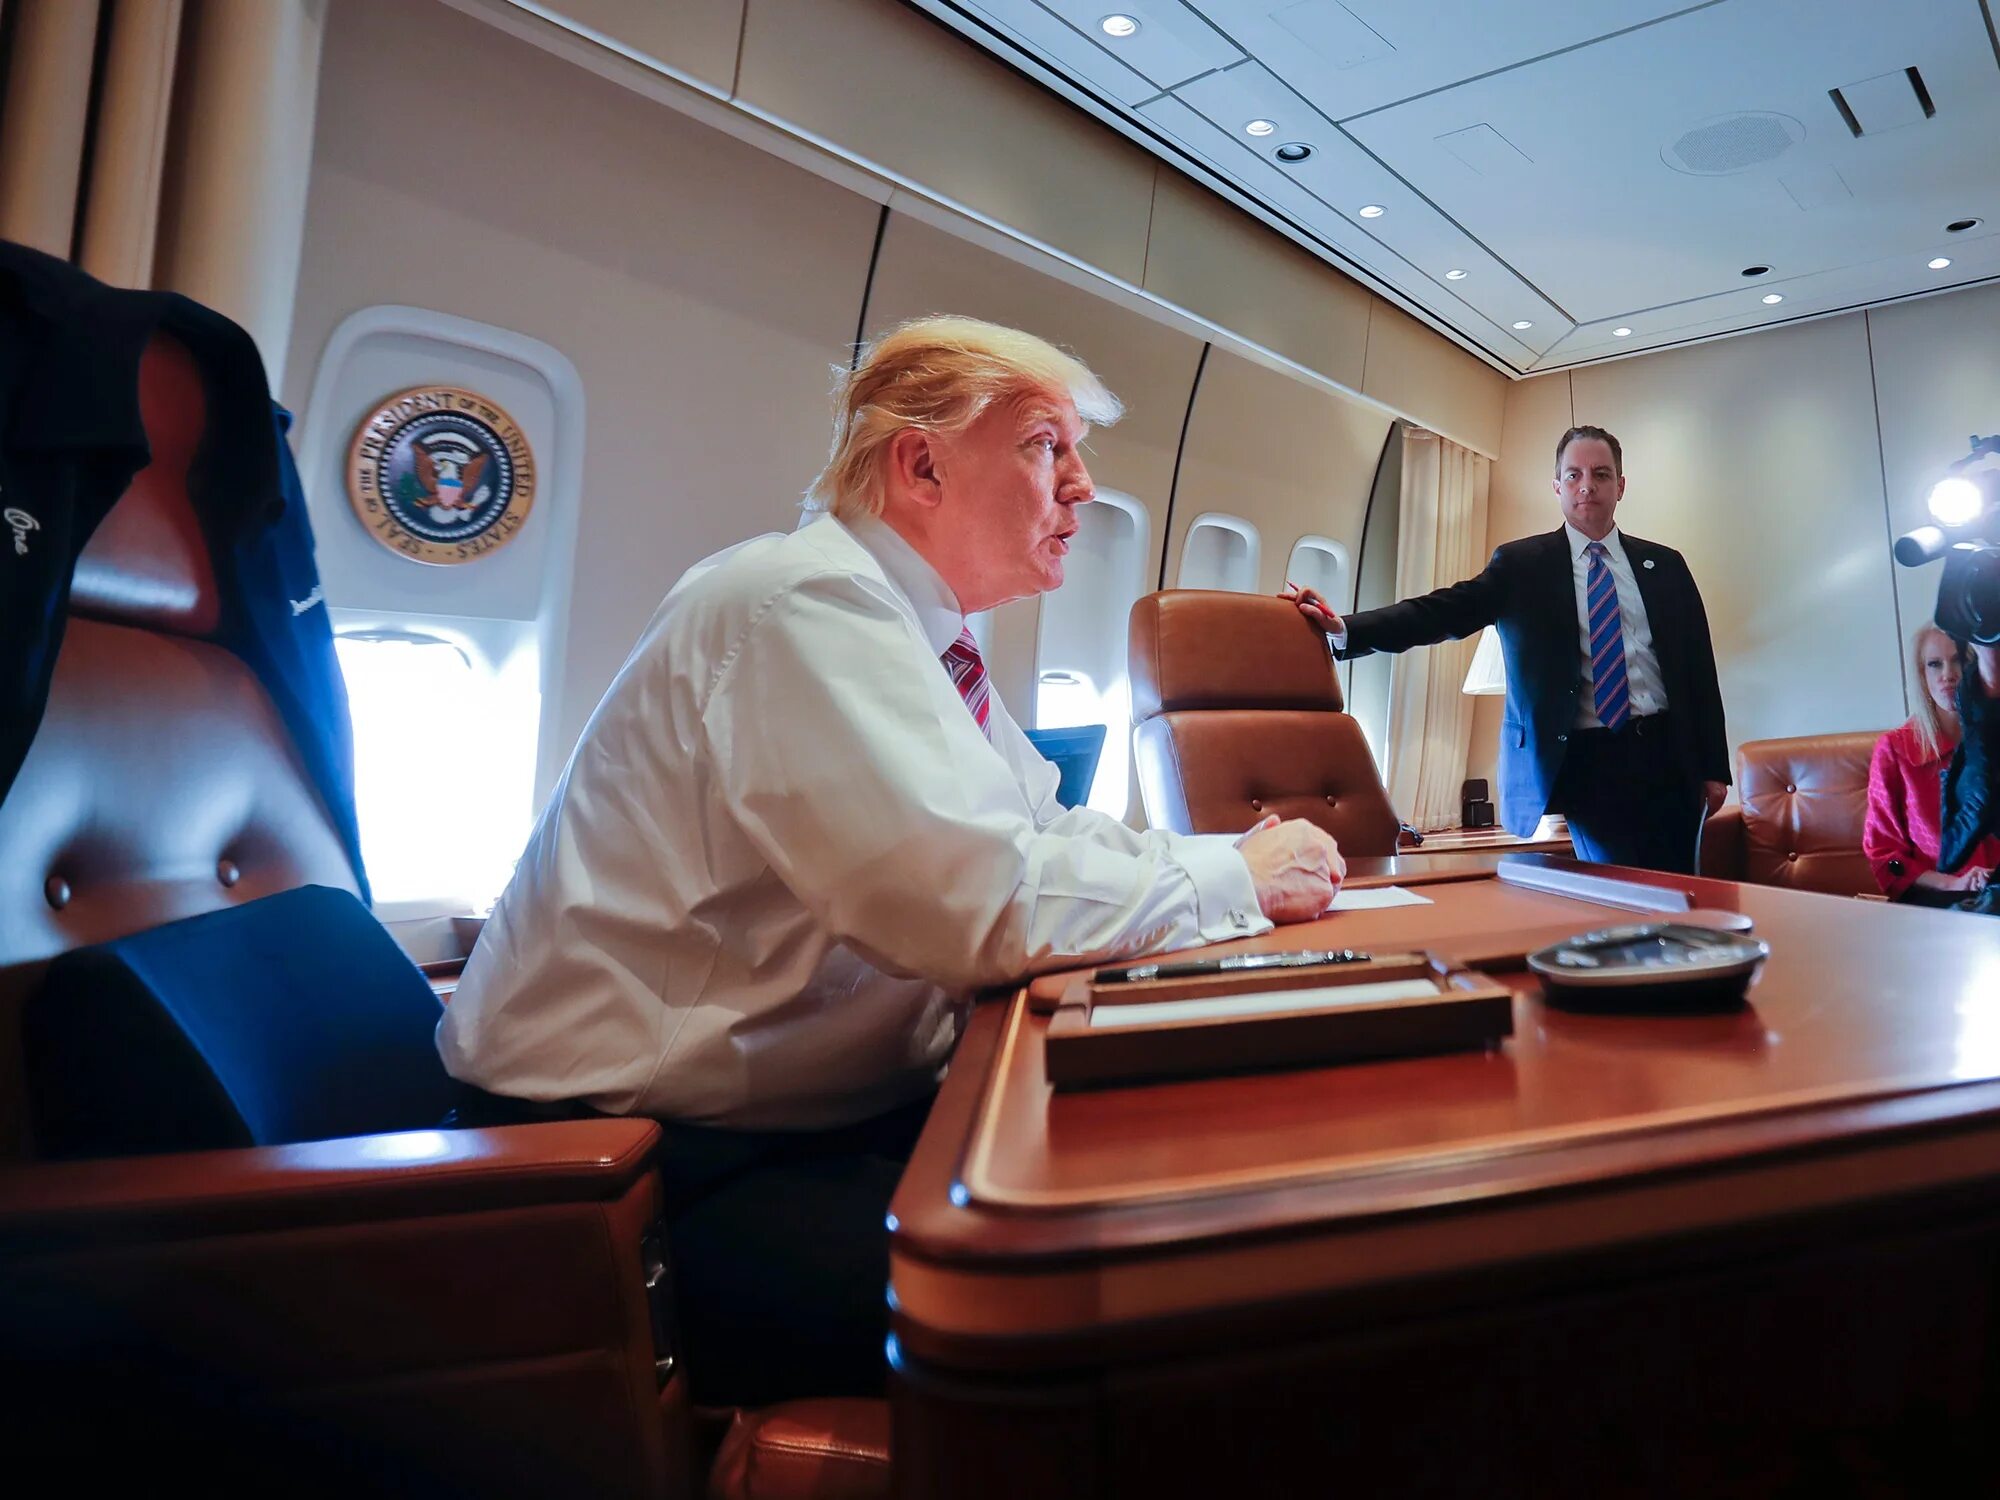 Самолет президента США Air Force one. Борт номер 1 президента США внутри. Салон самолета президента США. Боинг 747 президента США салон.